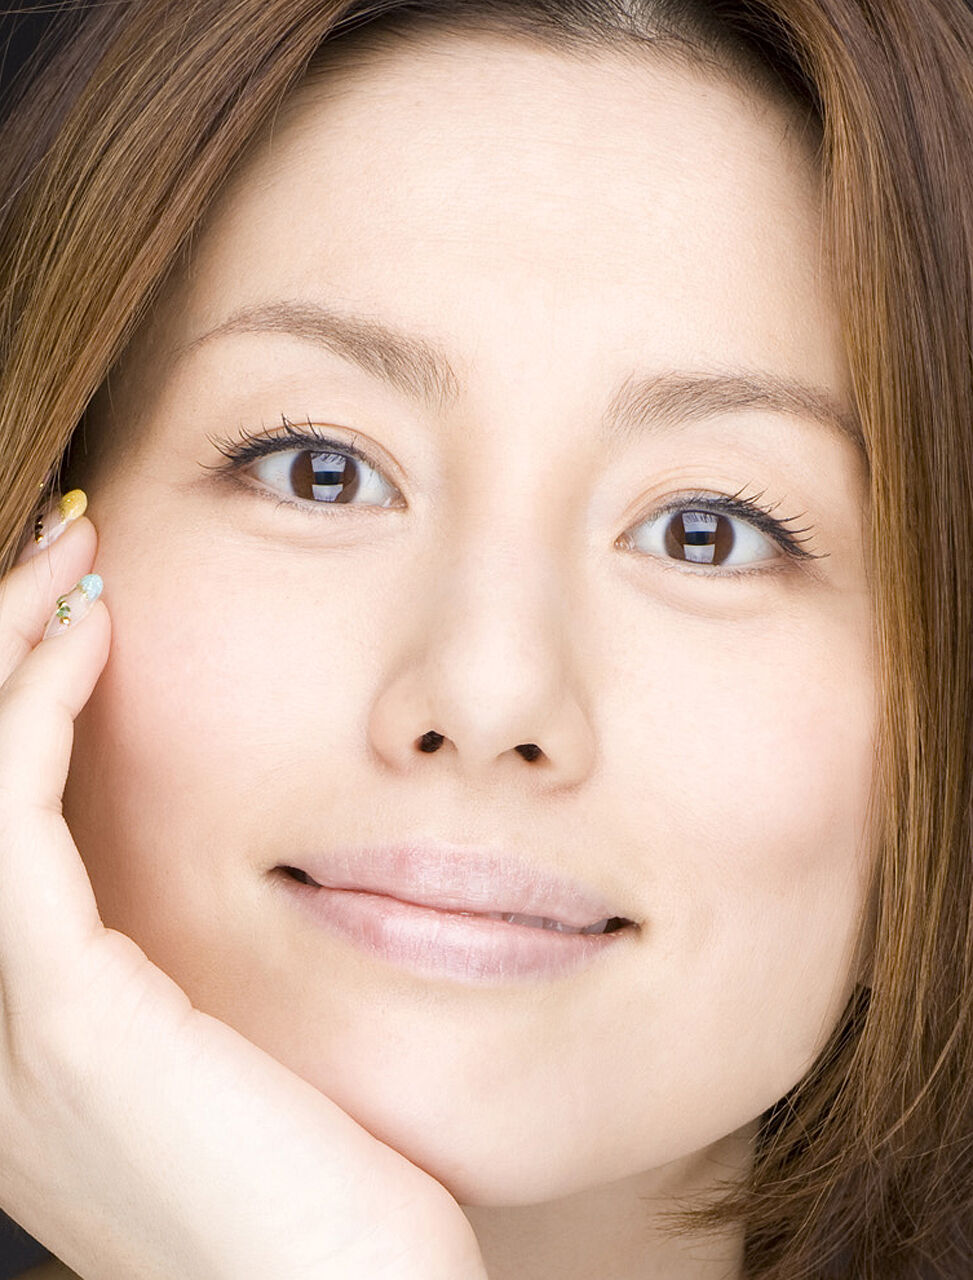 米倉涼子 顔アップ特集 綺麗な女優 アイドル モデル 芸能人の顔アップ画像研究所 顔面アップ同好会 顔好きによる顔好きのための好きサイト